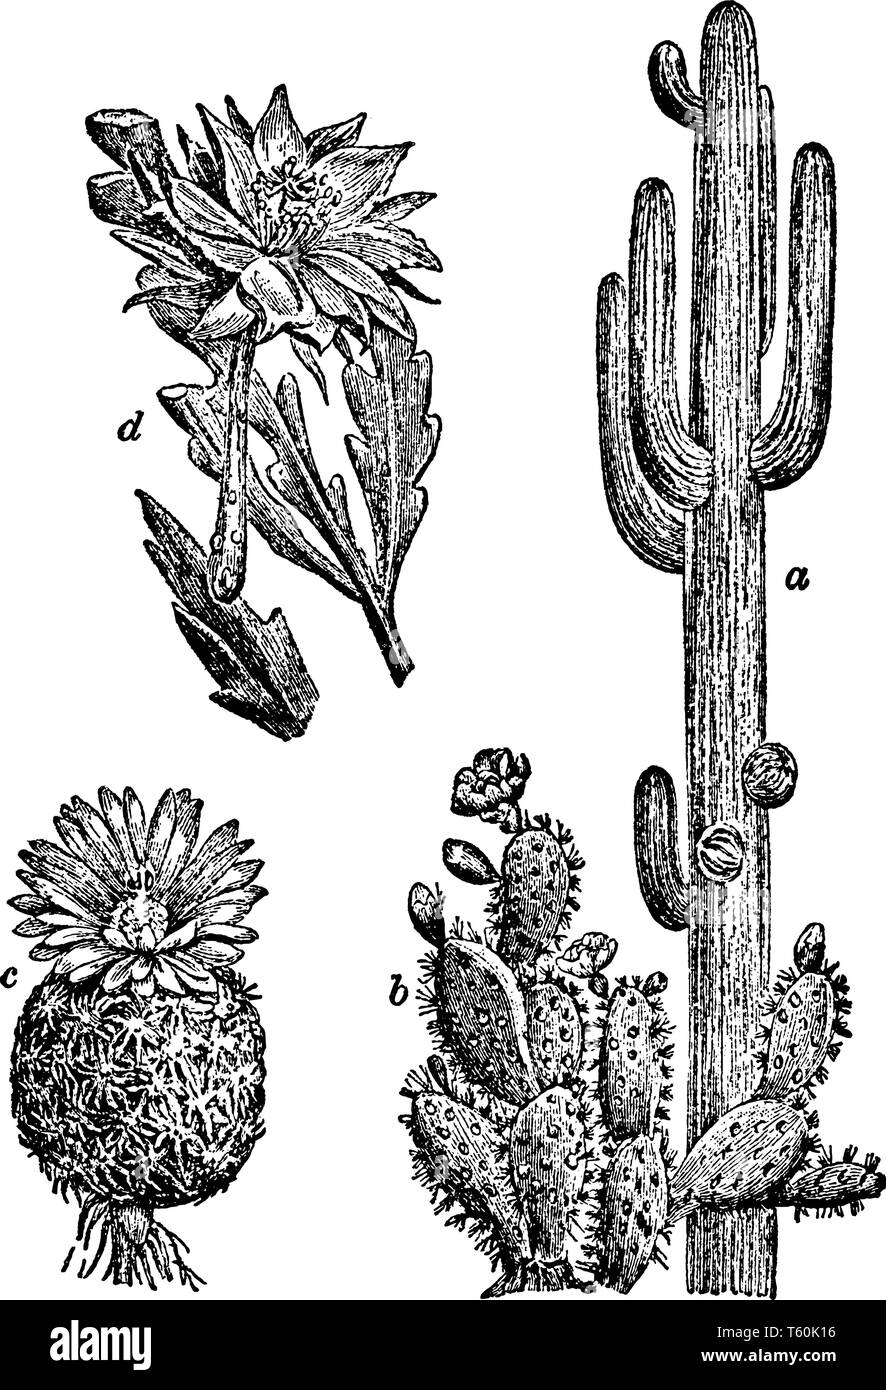 Il existe de nombreux types de cactus Saguaro. a, b, c ; Cactus, paddle, Fishhook Cactus ; d, Orchid Cactus, vintage dessin ou gravure illustration. Illustration de Vecteur